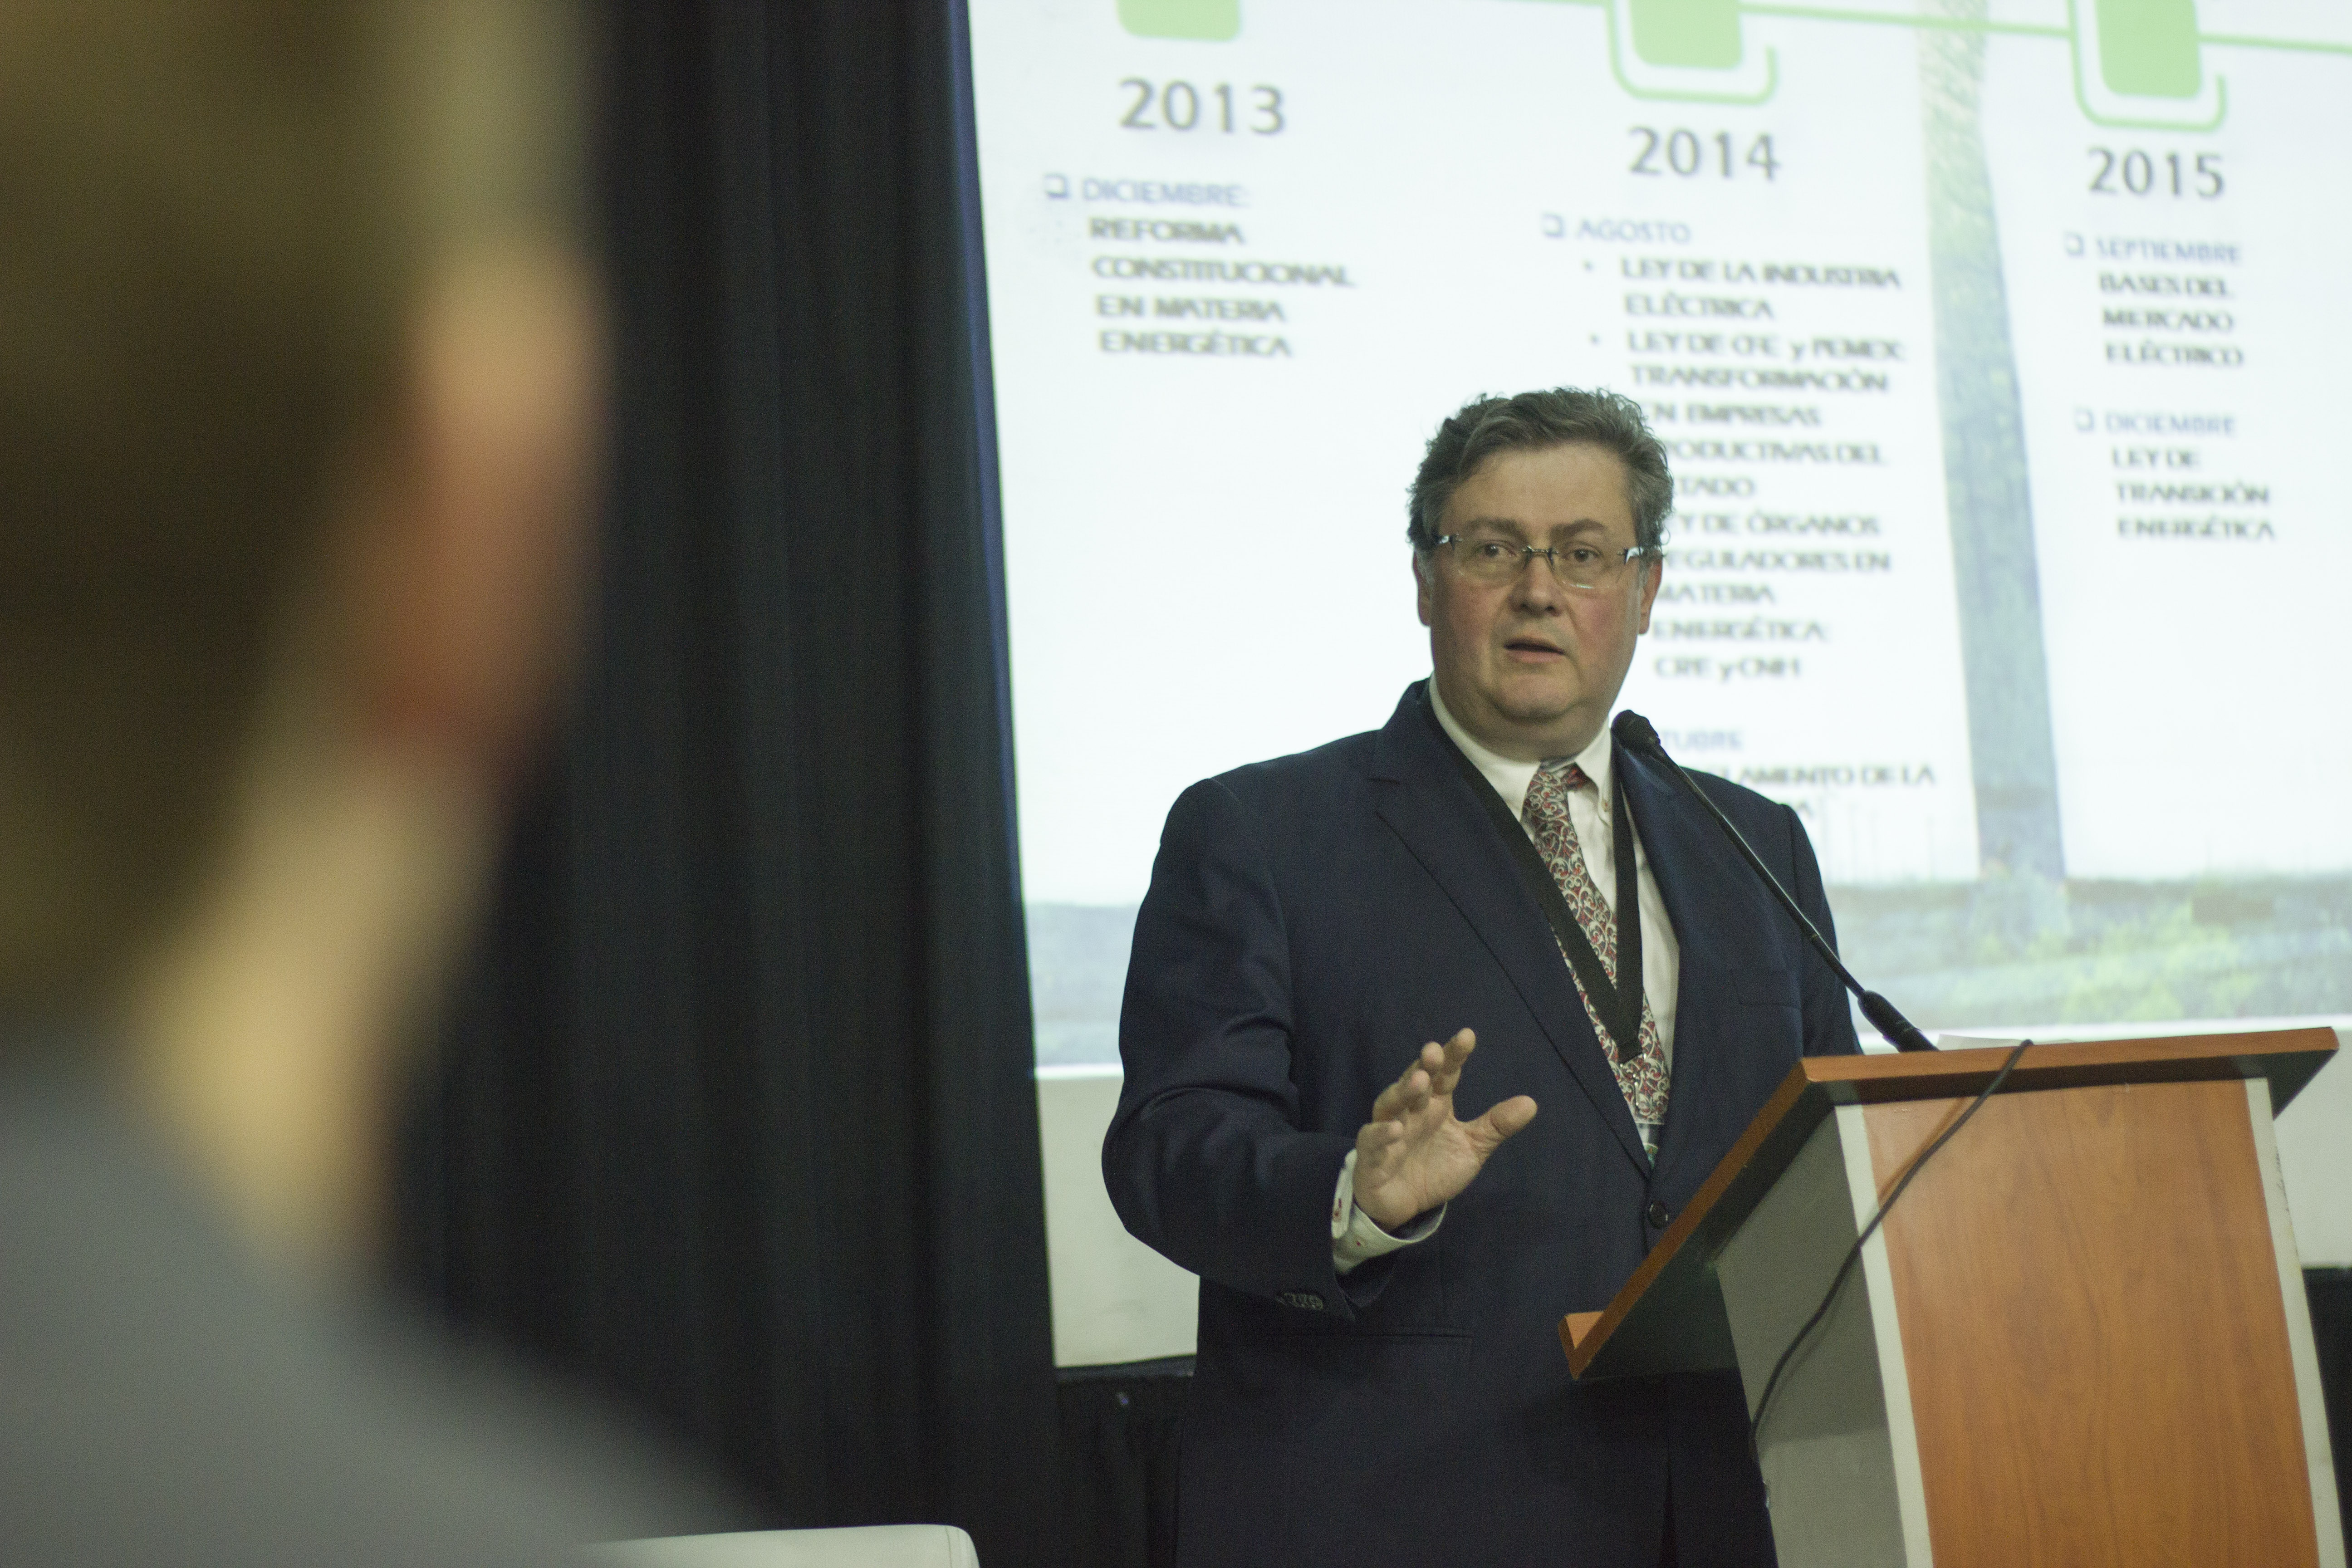 El Dr. Diego Arjona Argüelles expuso sobre el progreso y los futuros escenarios para la energía eólica en México y el mundo.